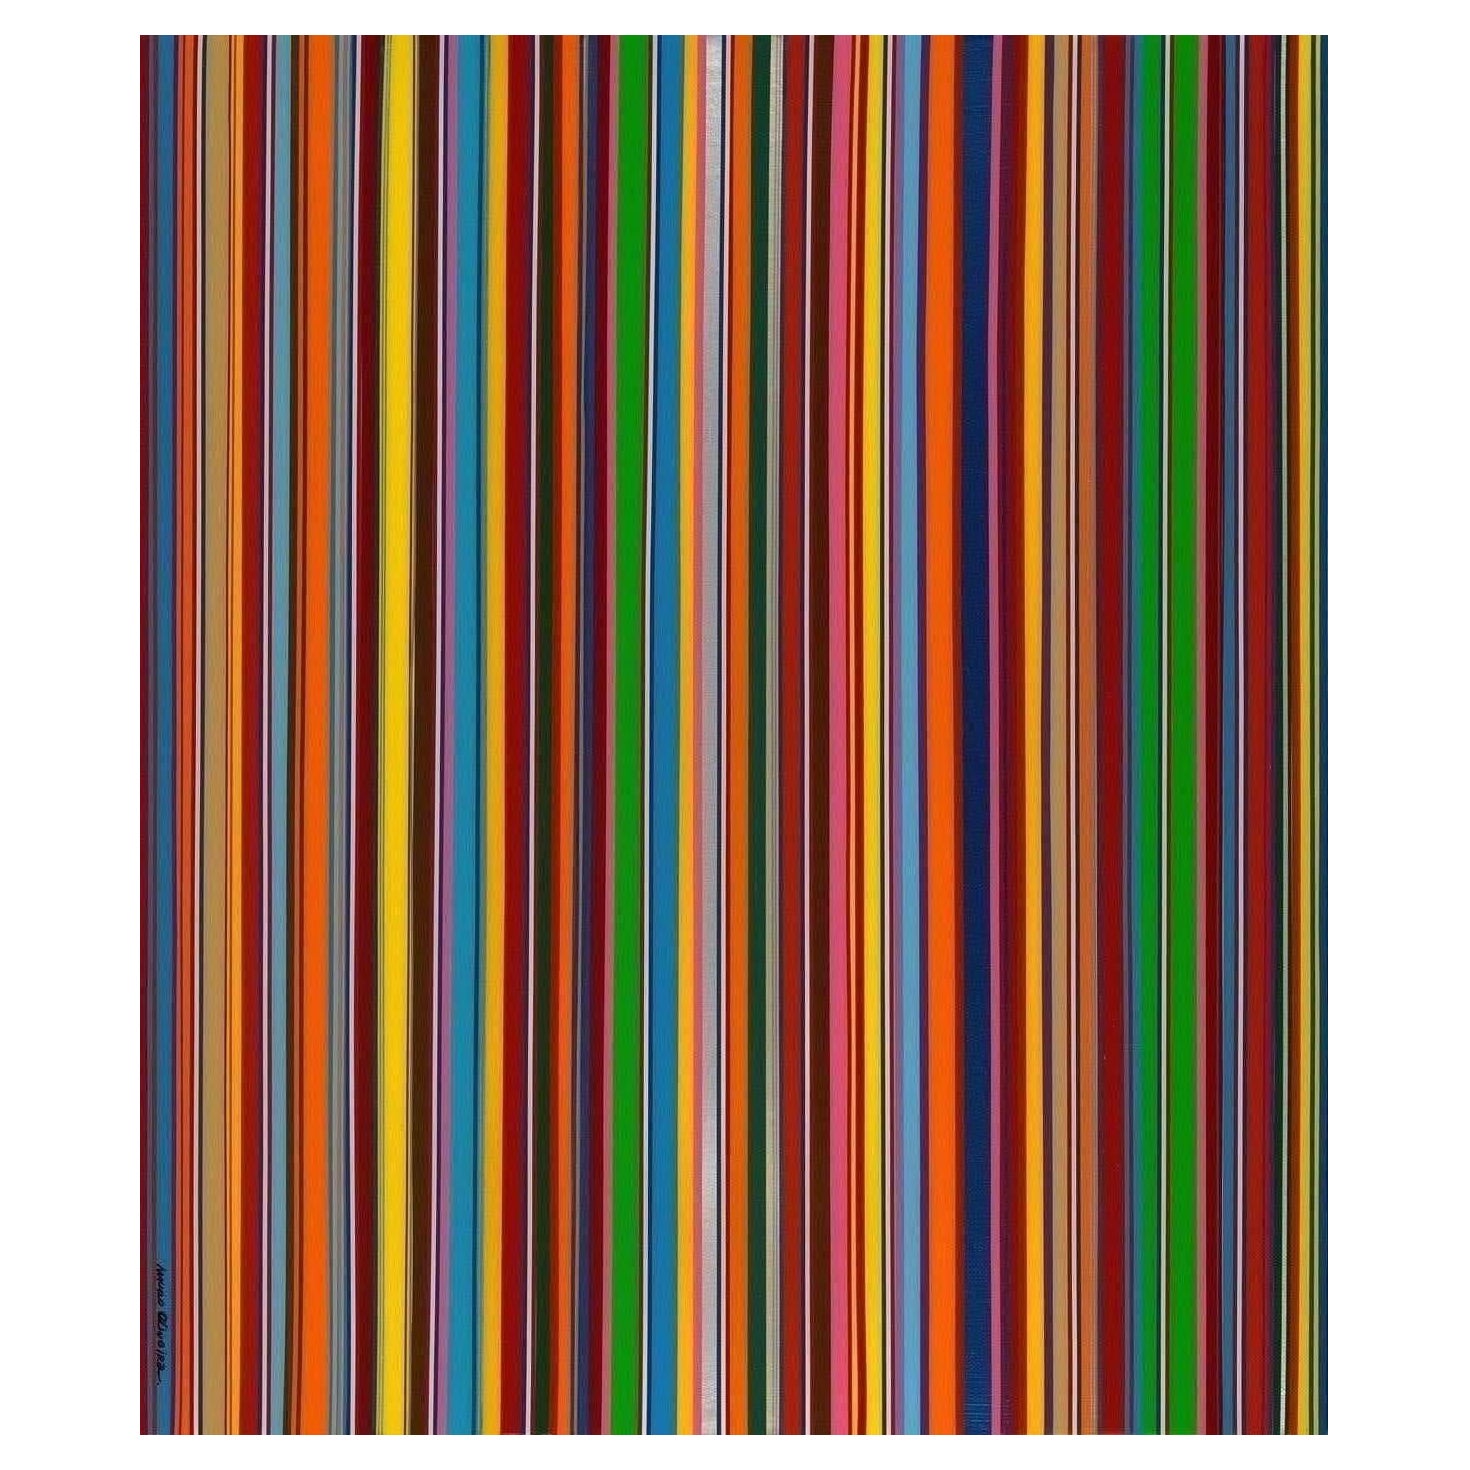 Mauro Oliveira Abstract Print – COLORFUL RAINBOW RAIN III (Druck in limitierter Auflage von nur 30 Stück)